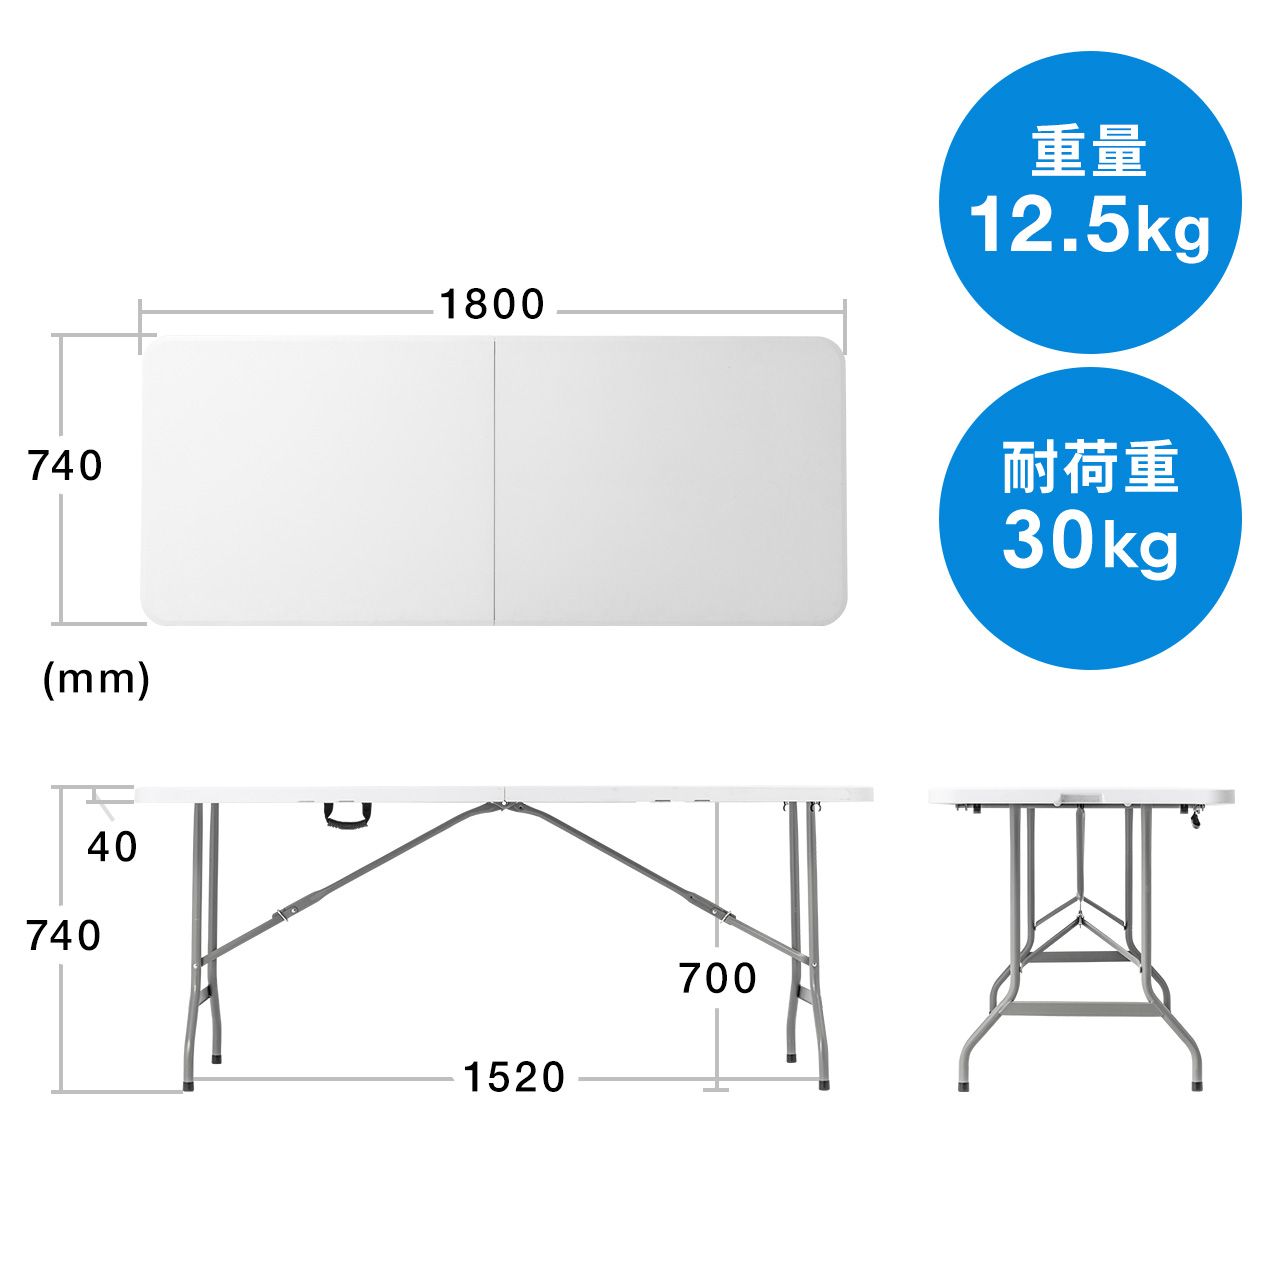 会議テーブル 折りたたみテーブル 省スペース 幅180cm 奥行74cm 樹脂天板 簡単組立 持ち運び 取っ手付き ホワイト 100-FD016W